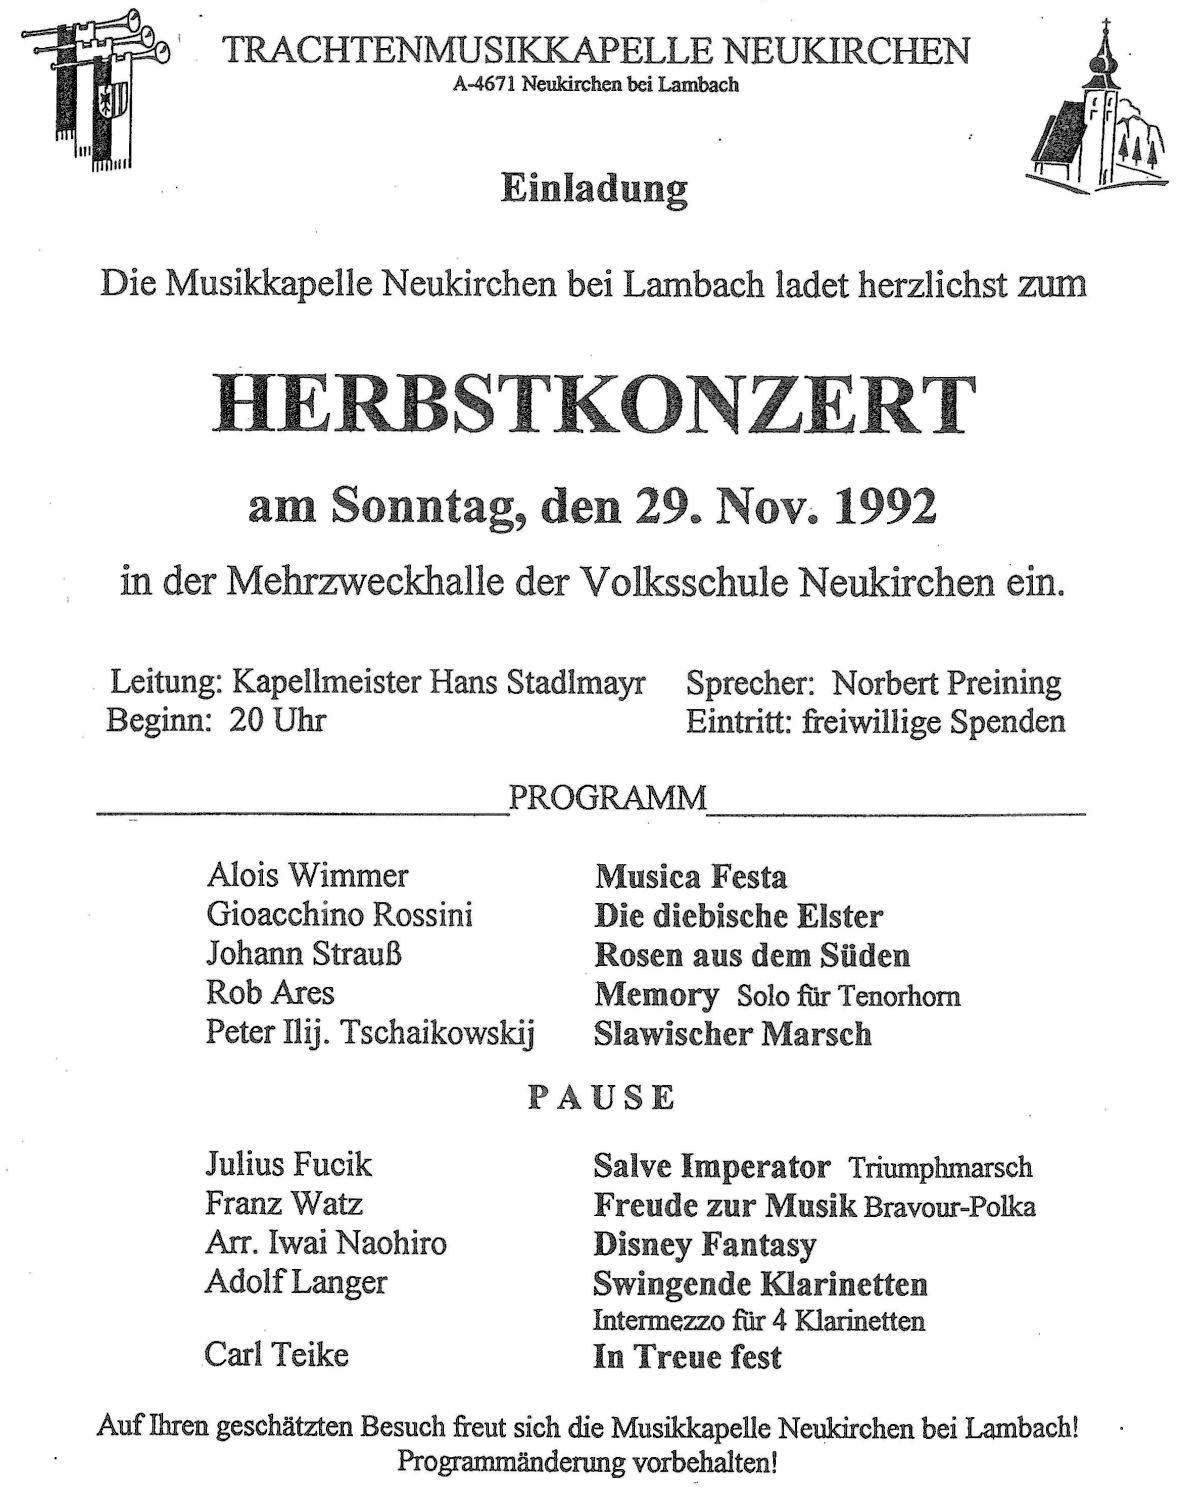 Herbstkonzert 1992